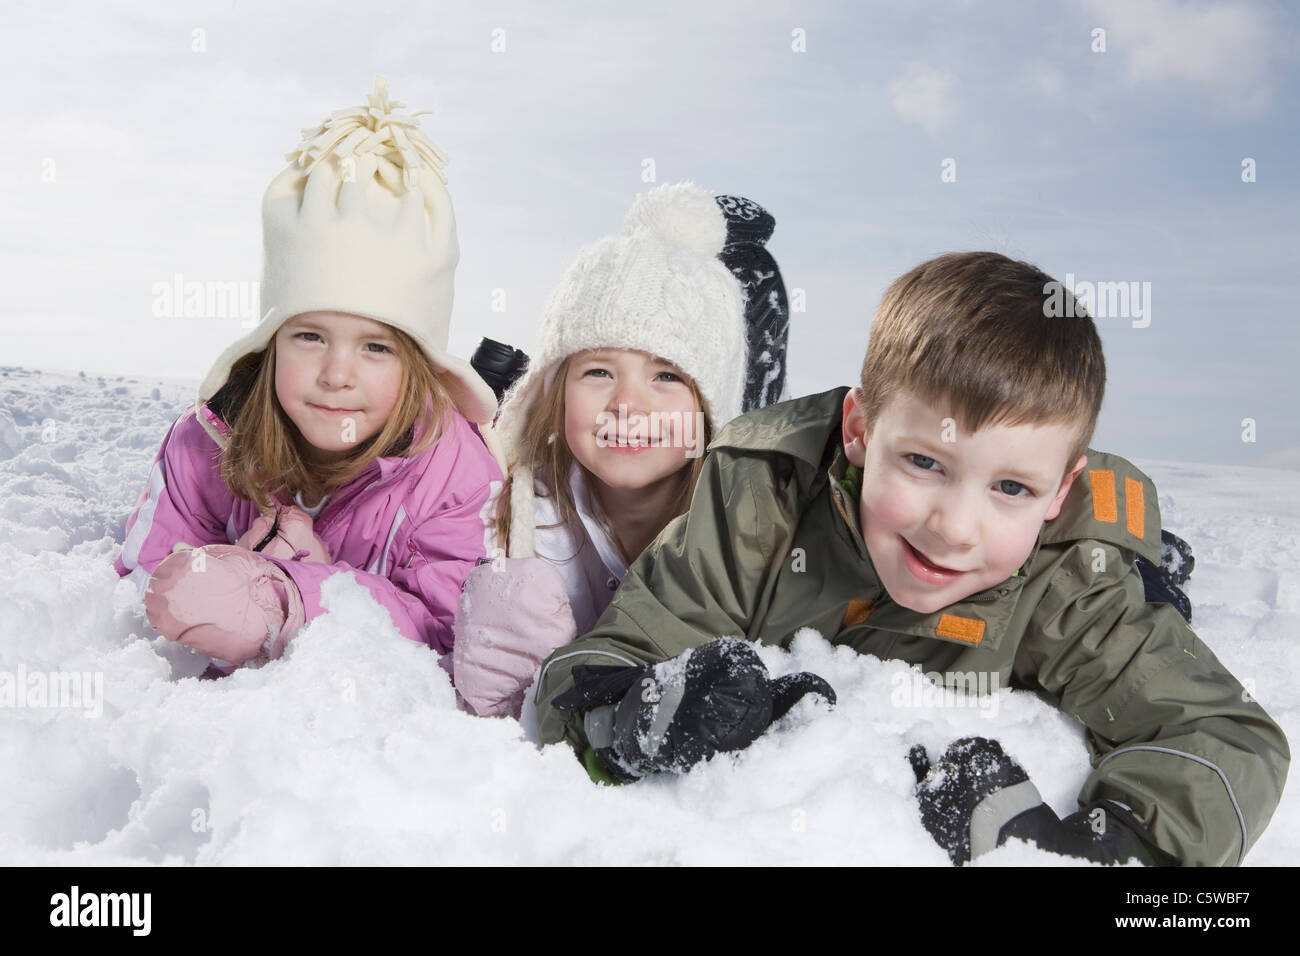 Germany, Bavaria, Munich, l'enfant (4-5) (8-9) lying in snow, portrait Banque D'Images